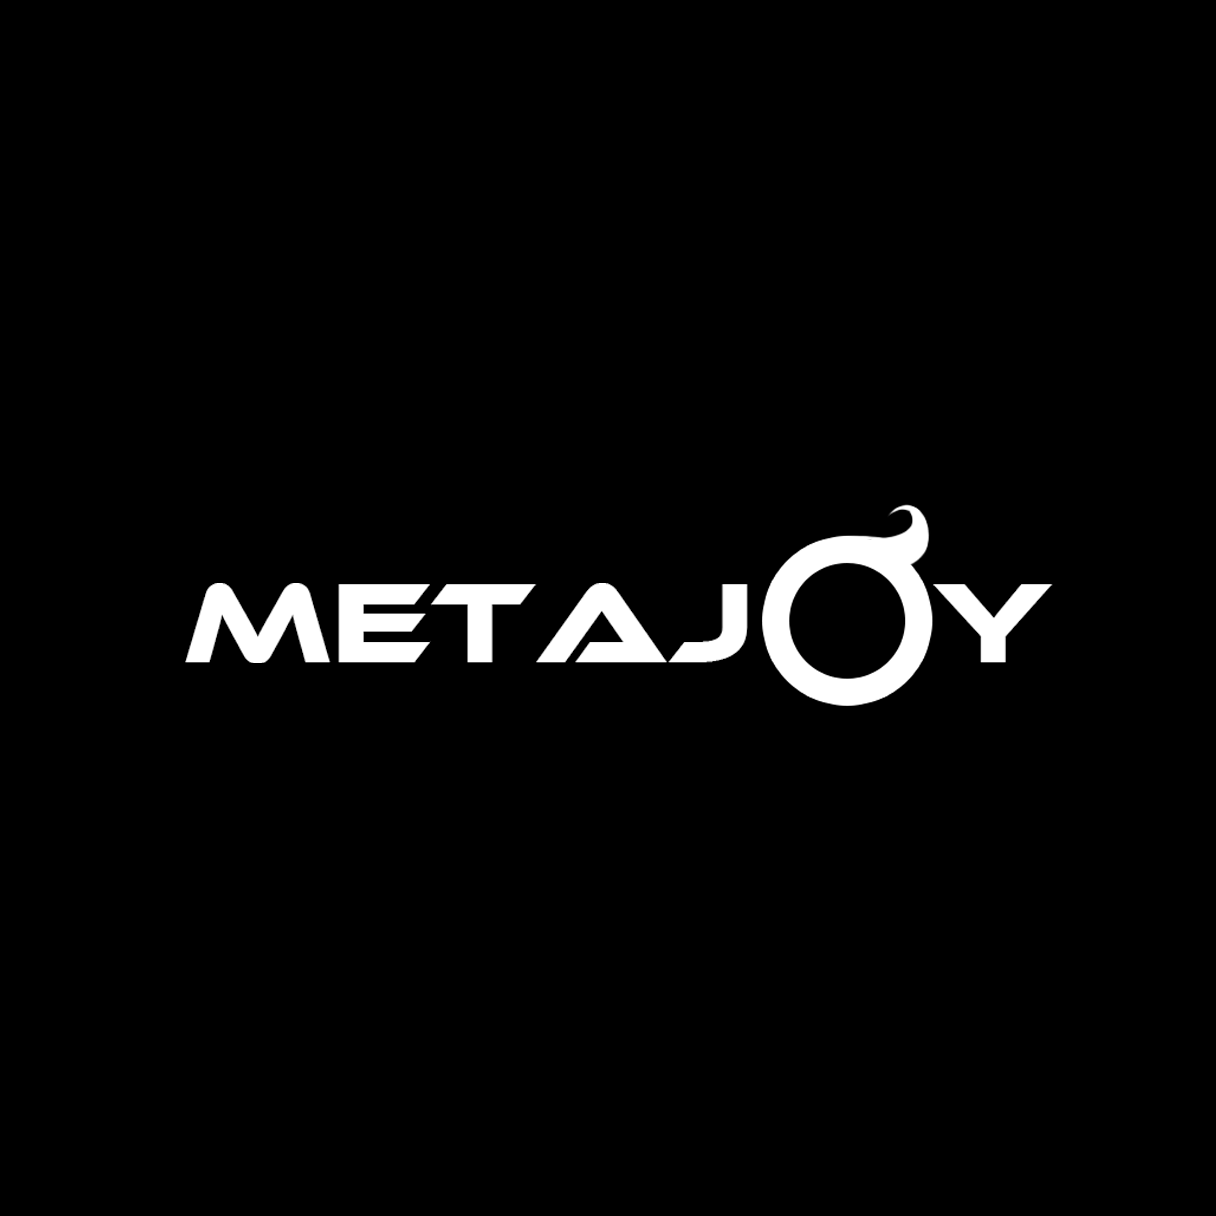 Metajoy